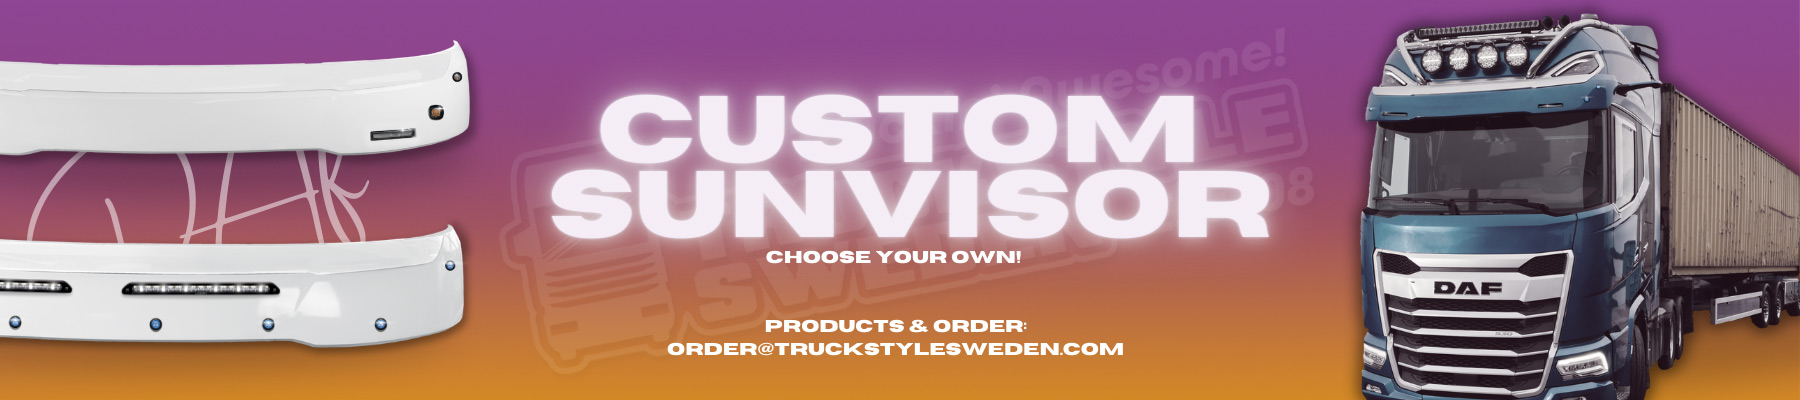 Custom sunvisors